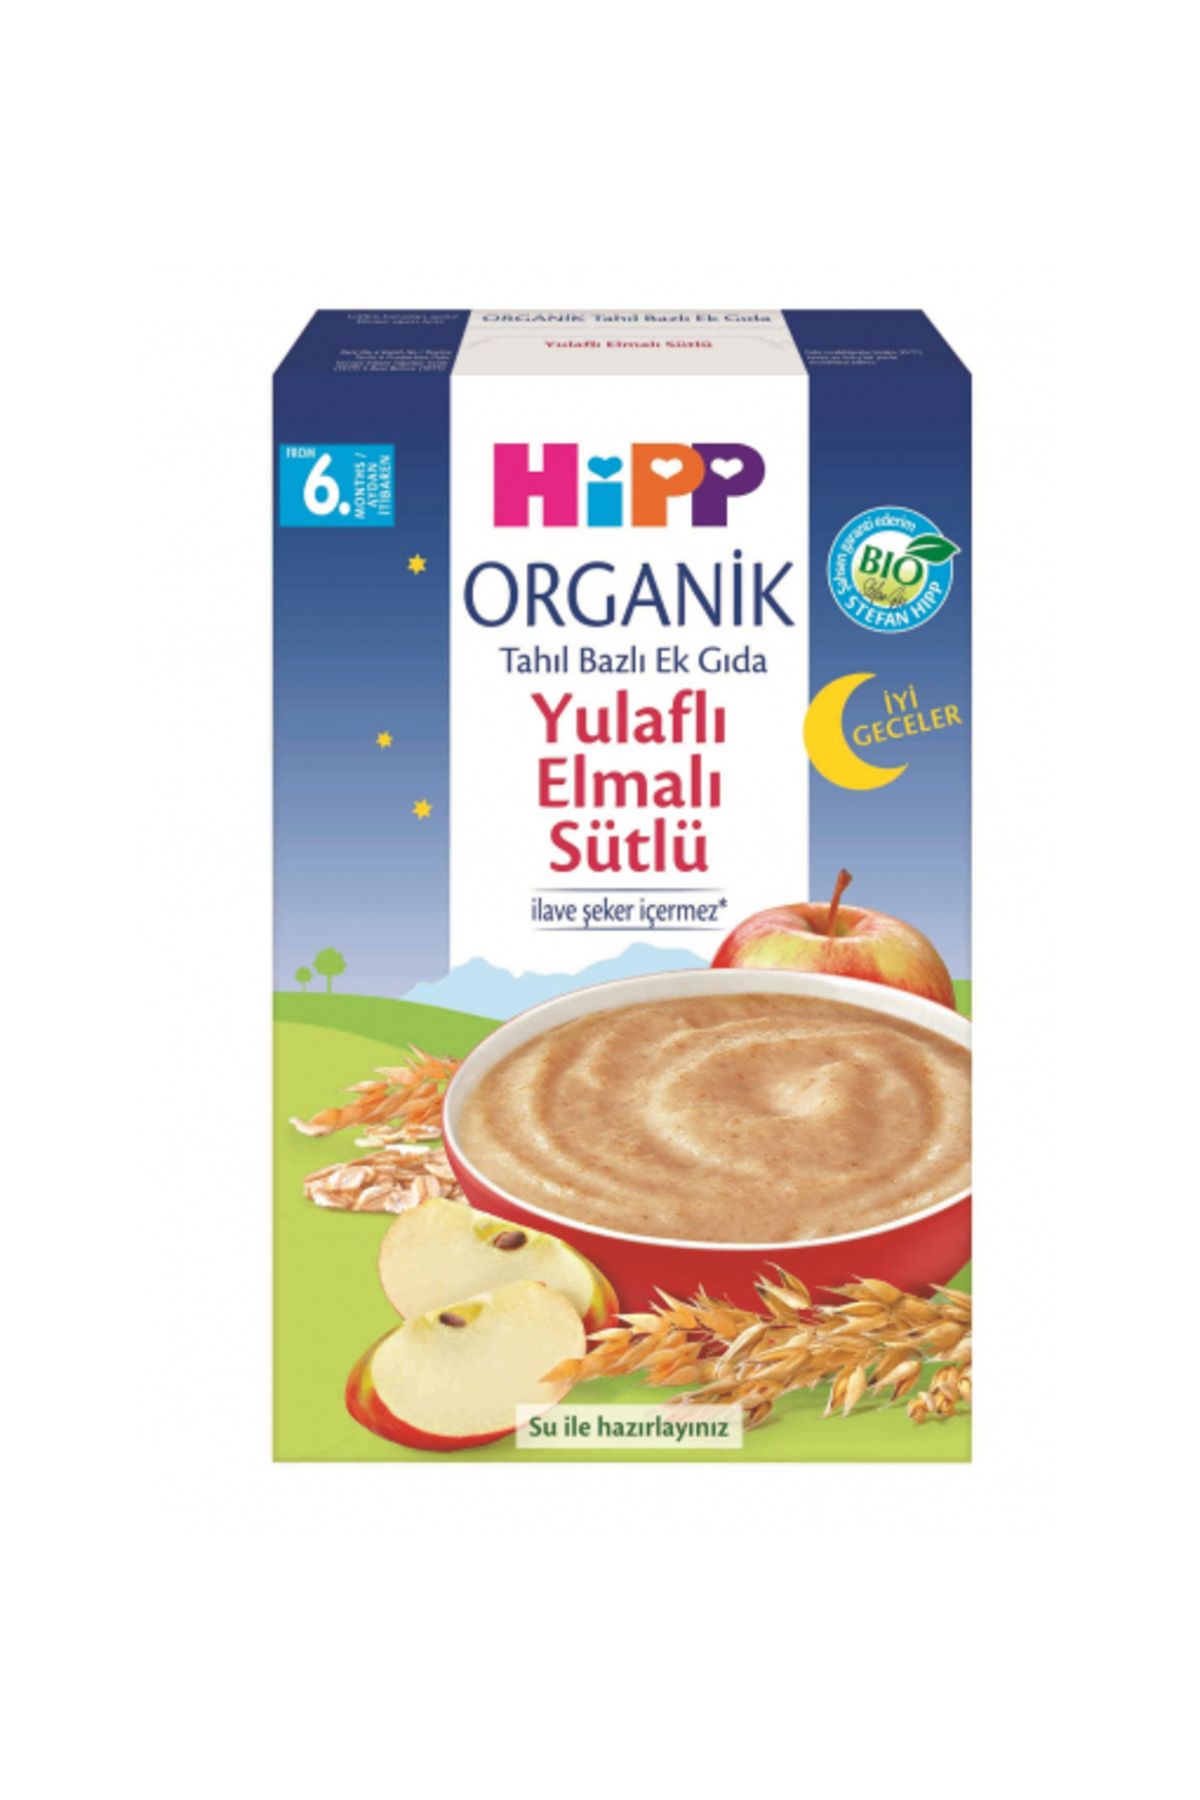 Hipp Organik Iyi Geceler Sütlü Yulaflı Elmalı Tahıl Bazlı Ek Gıda 250 gr